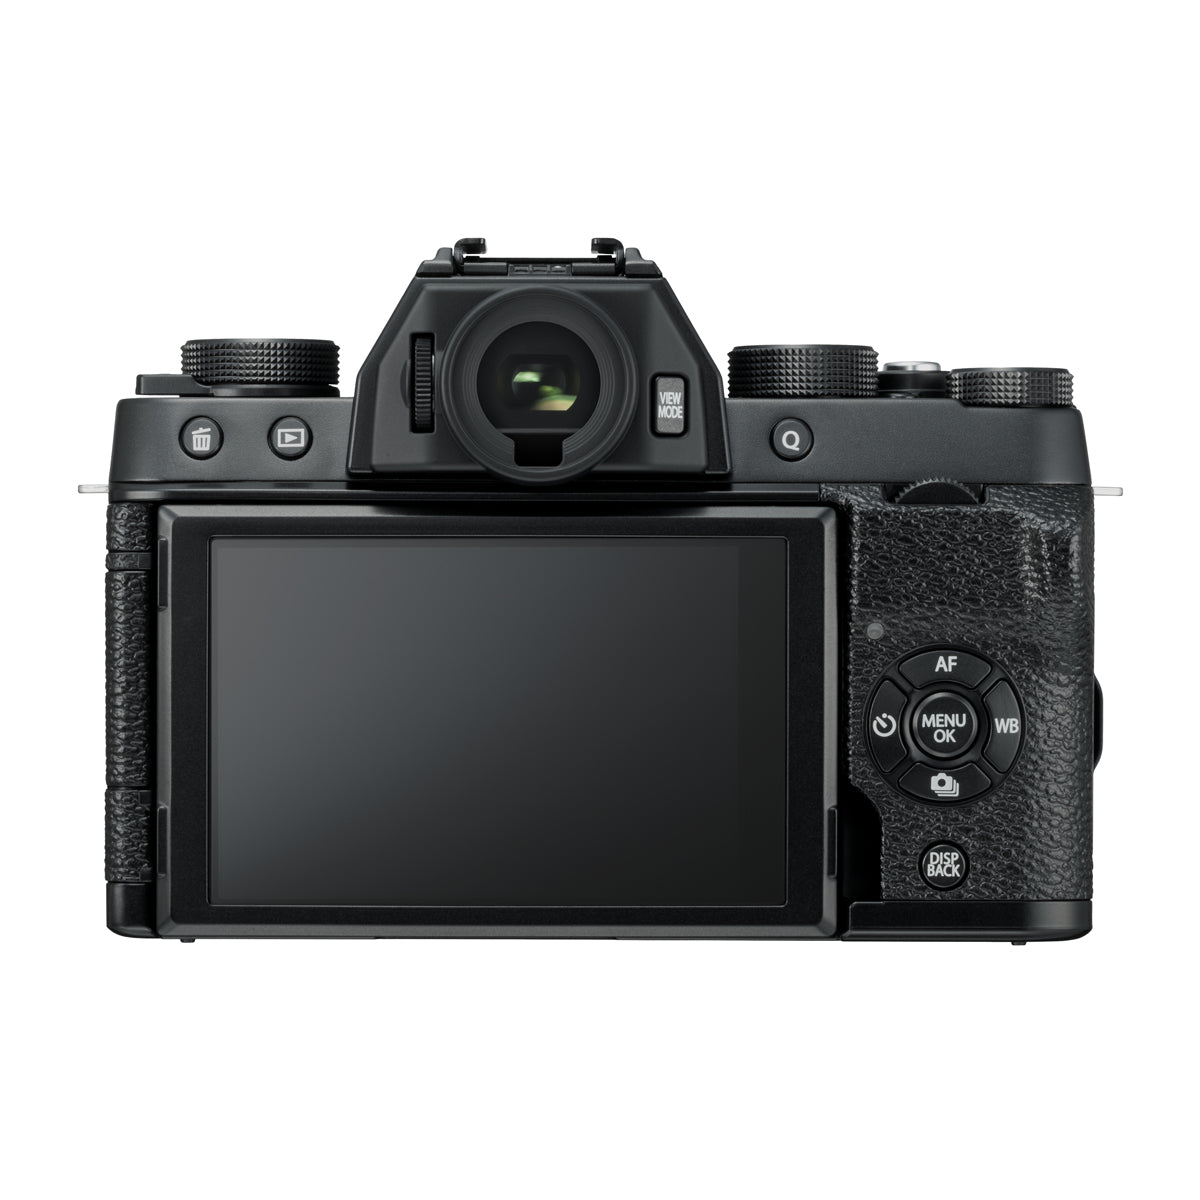 Fujifilm X-T100 Body with XC 15-45mm OIS PZ Lens Kit (Black)